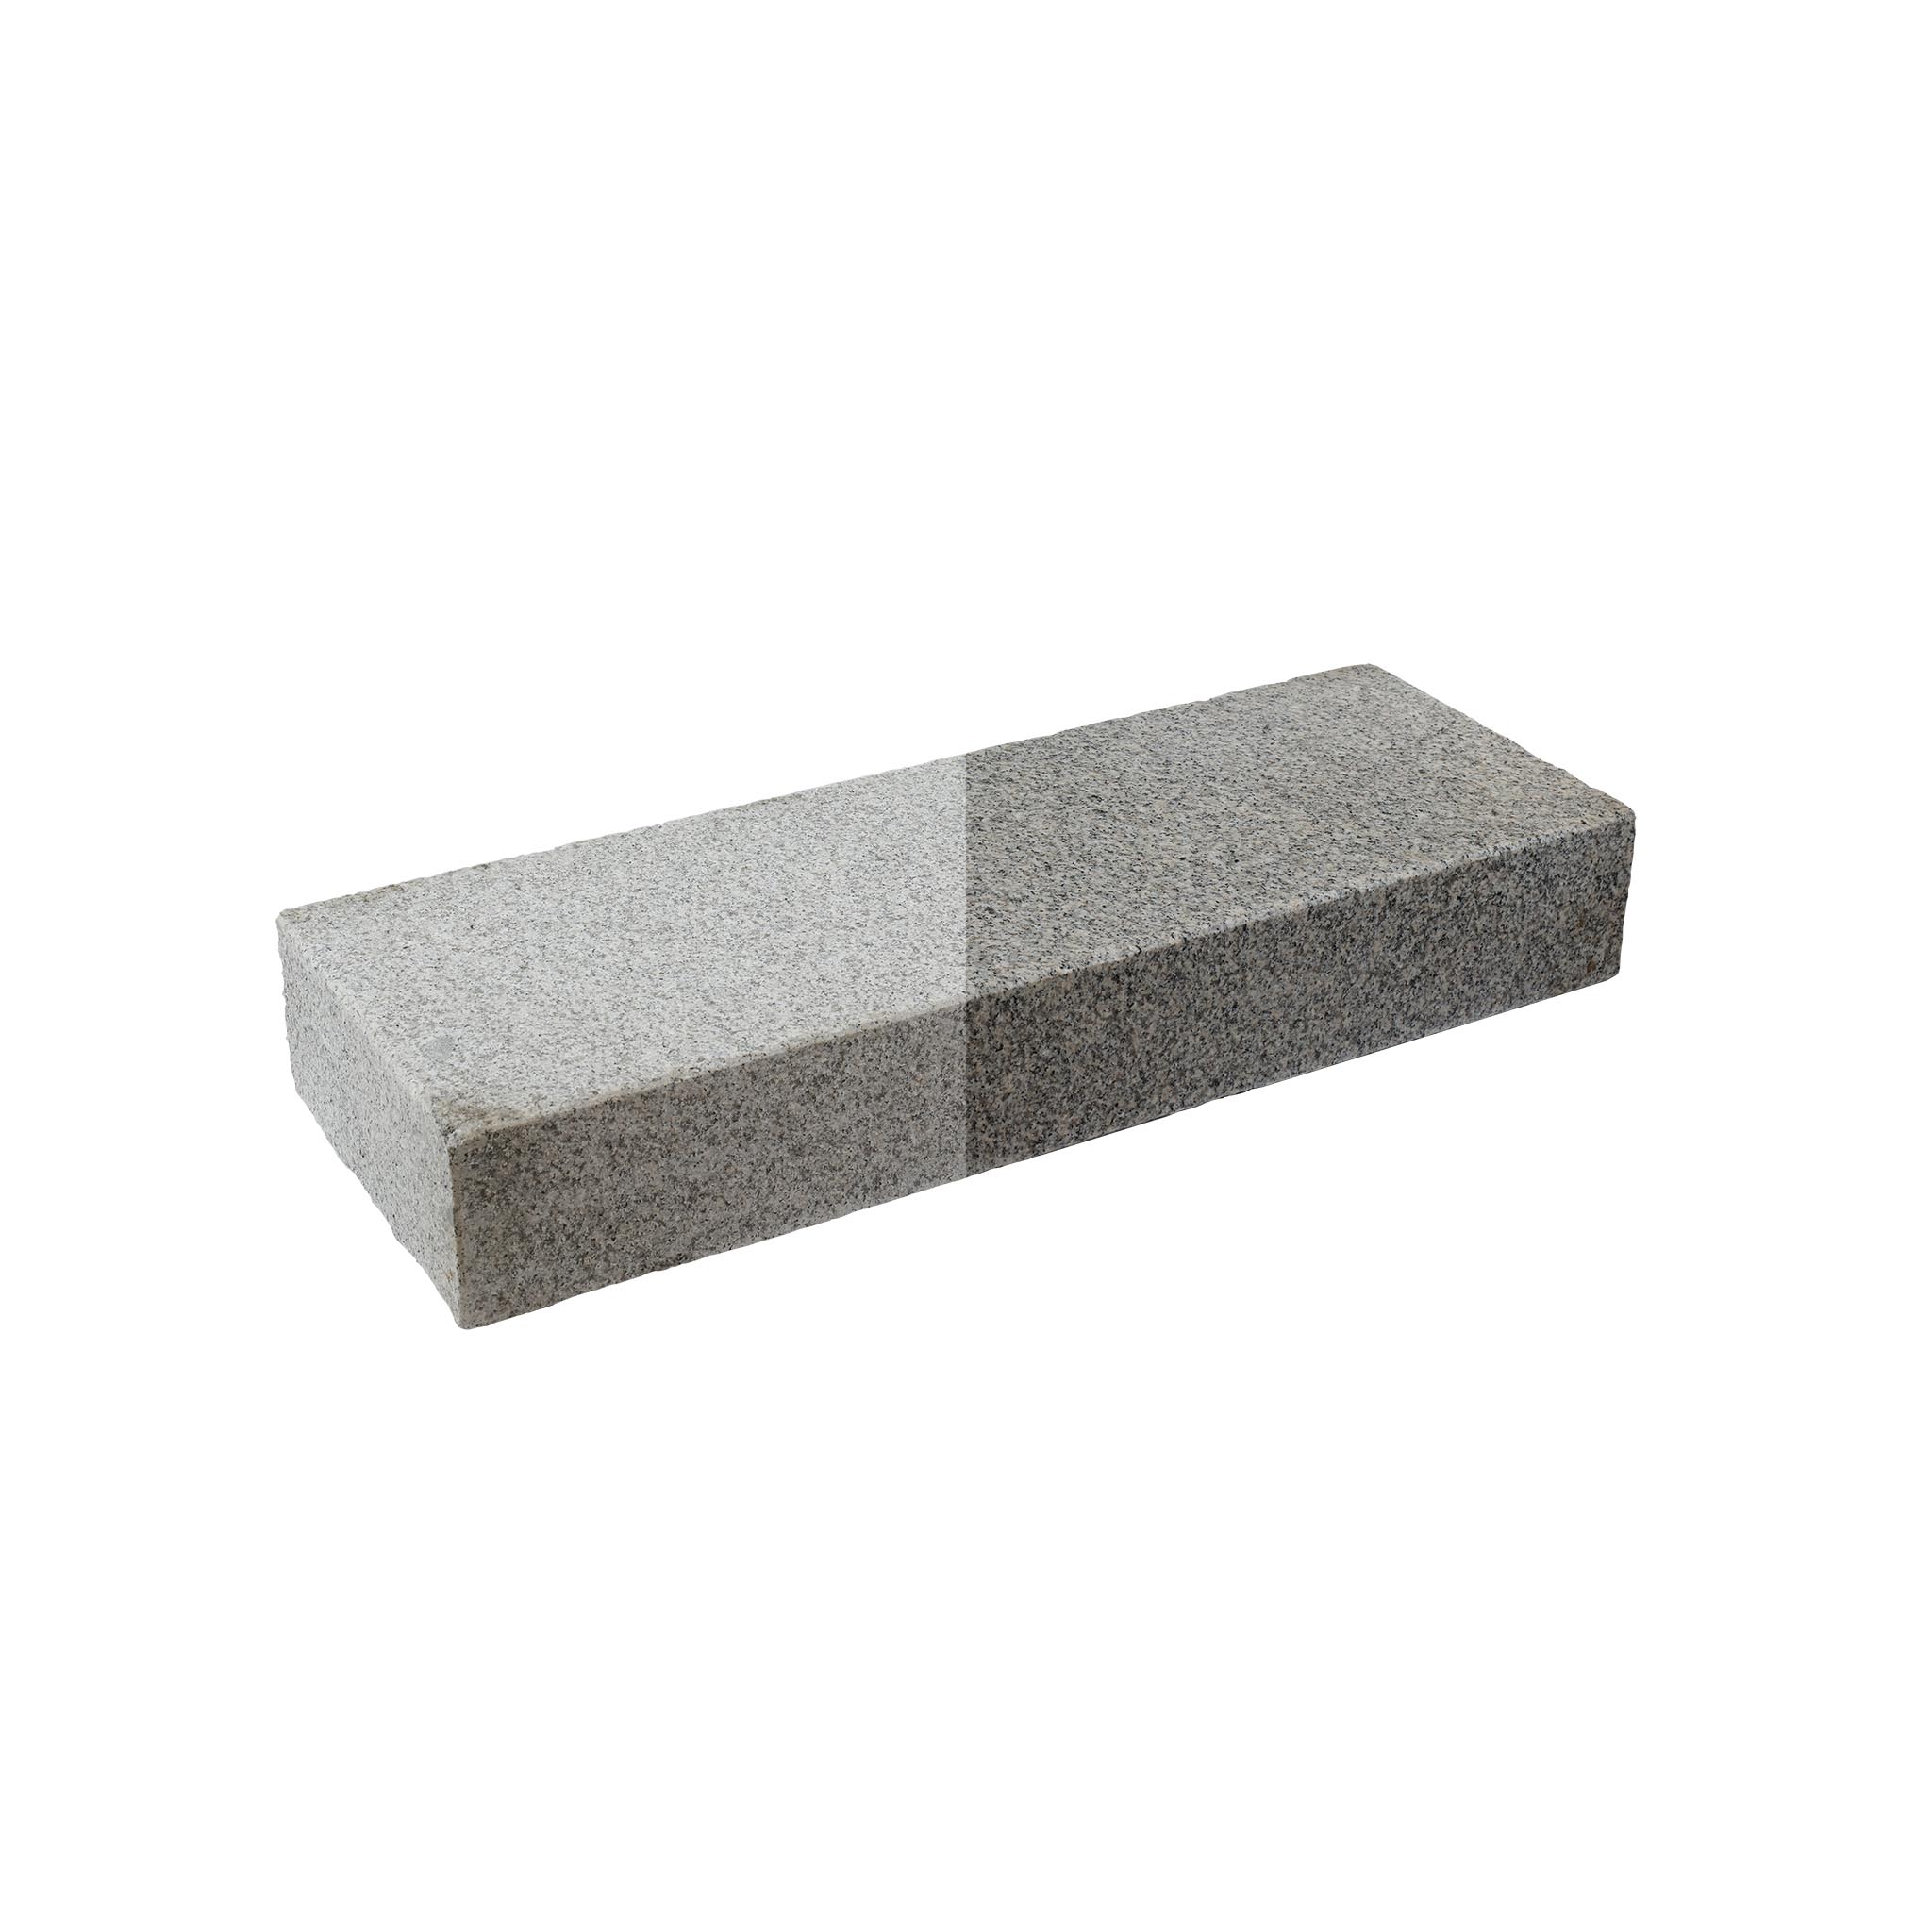 Blockstufen, Granit grau (Pina) geflammt, Granit Blockstufe, 15 x 35 x 100 cm, G603, grau, 